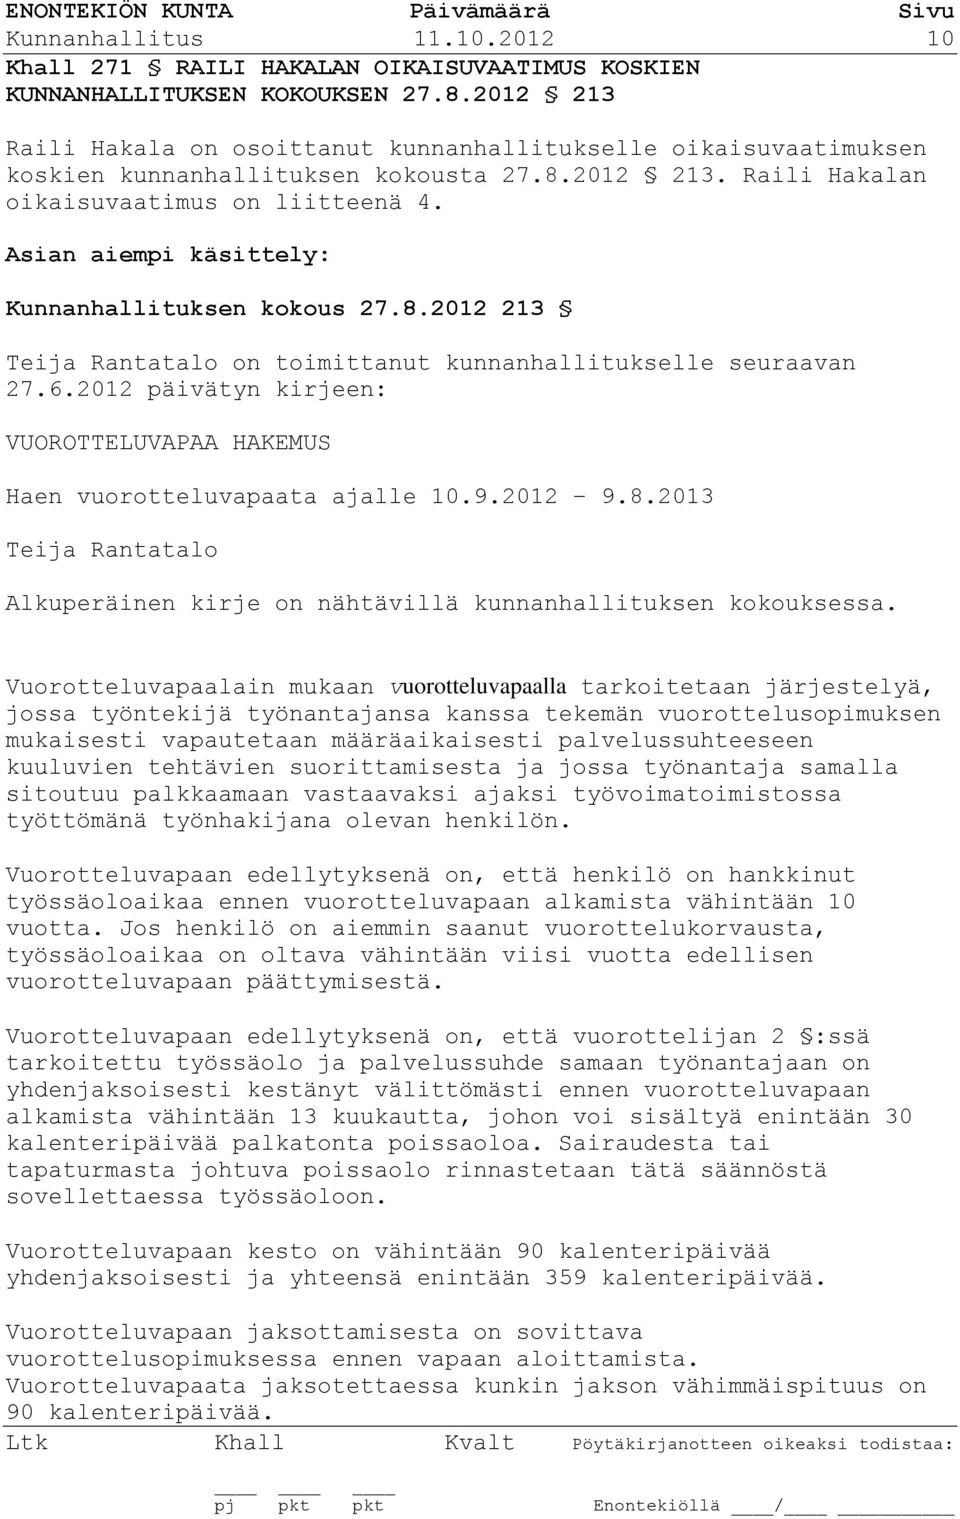 Asian aiempi käsittely: Kunnanhallituksen kokous 27.8.2012 213 Teija Rantatalo on toimittanut kunnanhallitukselle seuraavan 27.6.